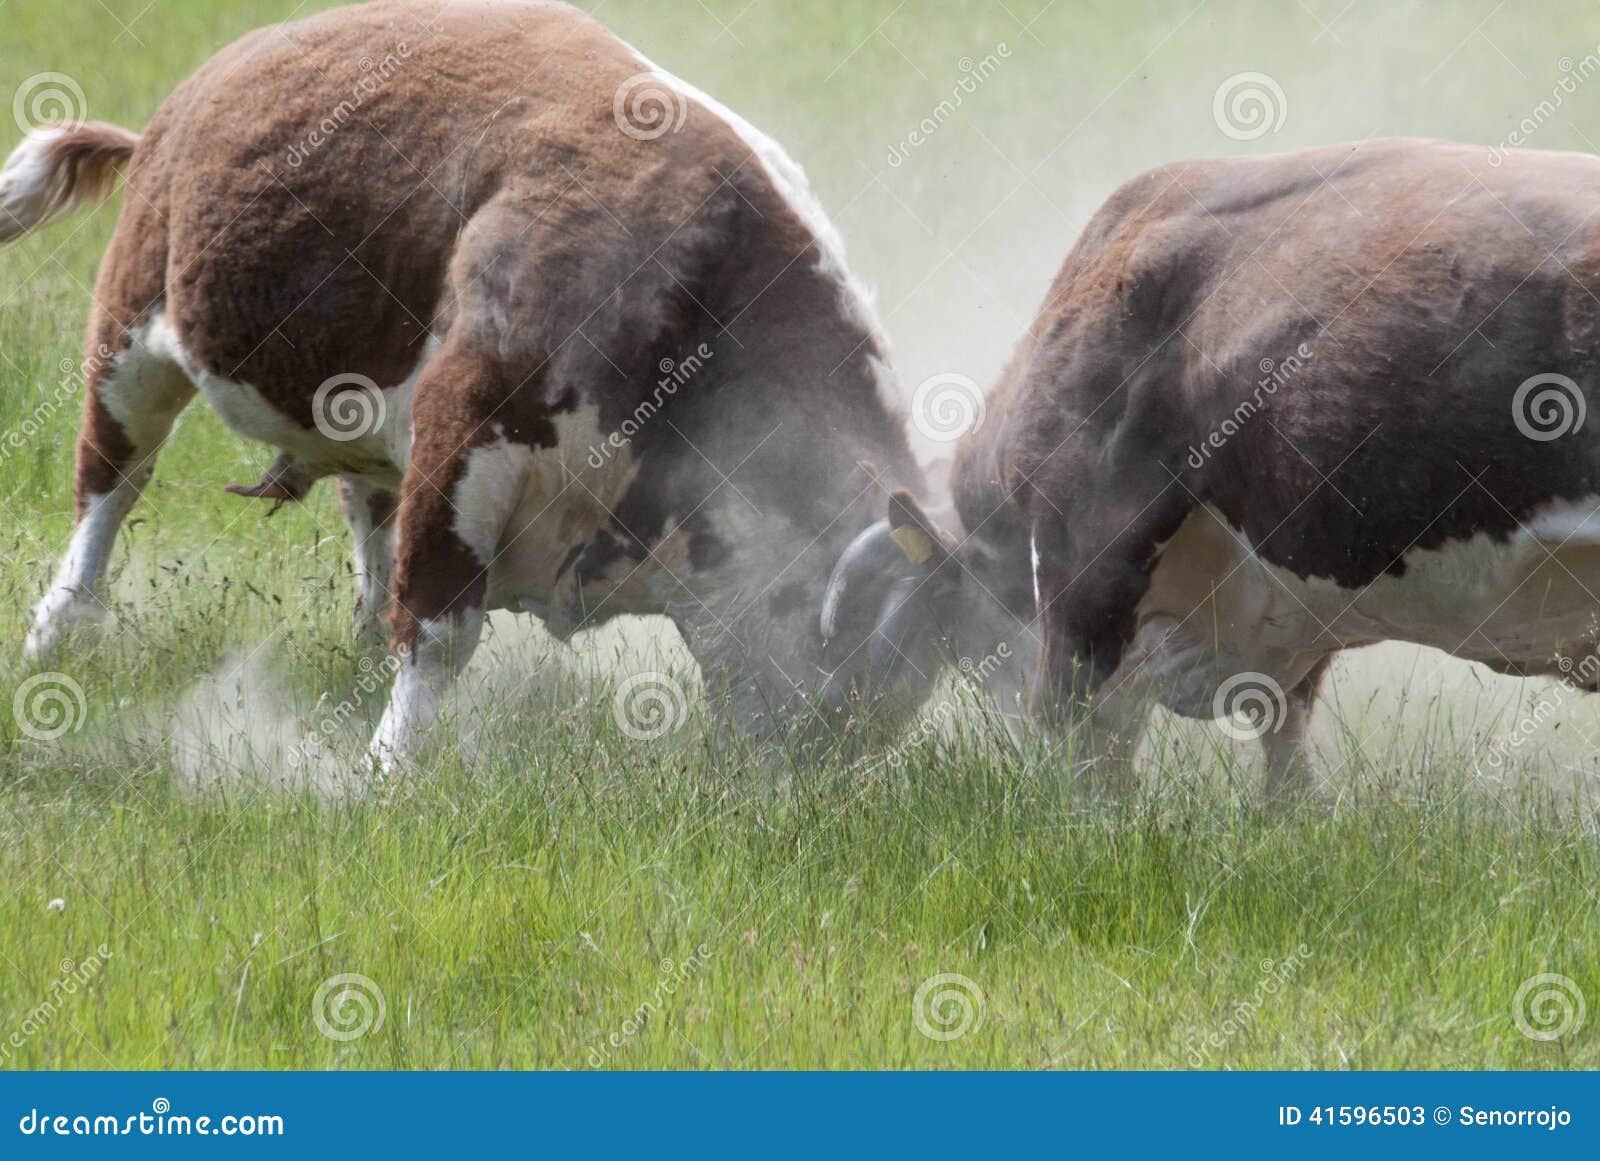 bulls fighting